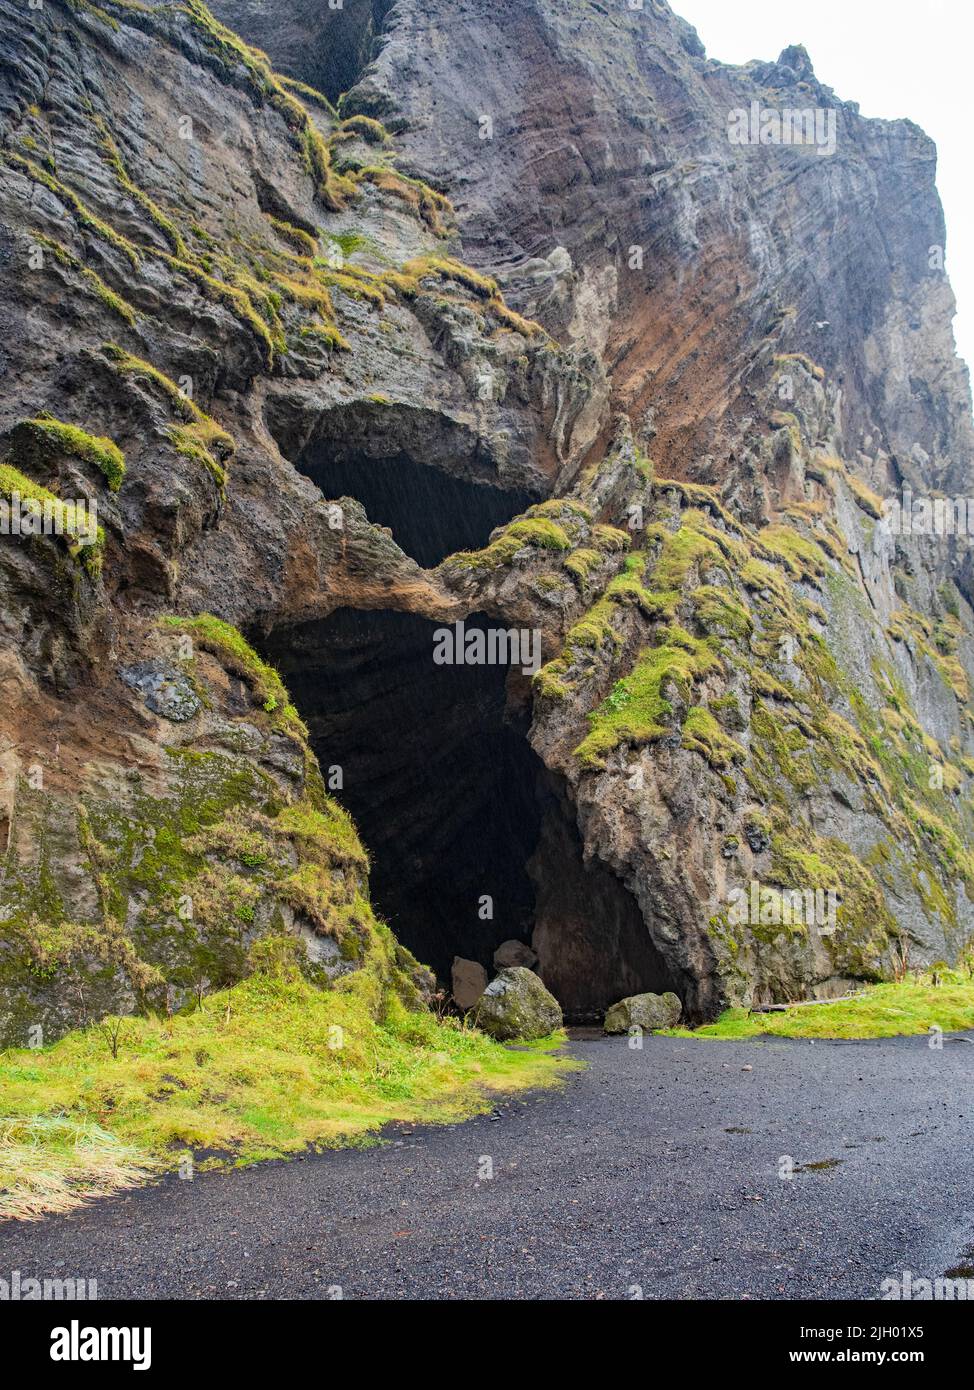 La grotta, che prende il nome da Hjörleifur, il famoso colono della storia dell'Islanda, si trova sulla costa meridionale dell'Islanda. Con vista panoramica sulle colline, Foto Stock